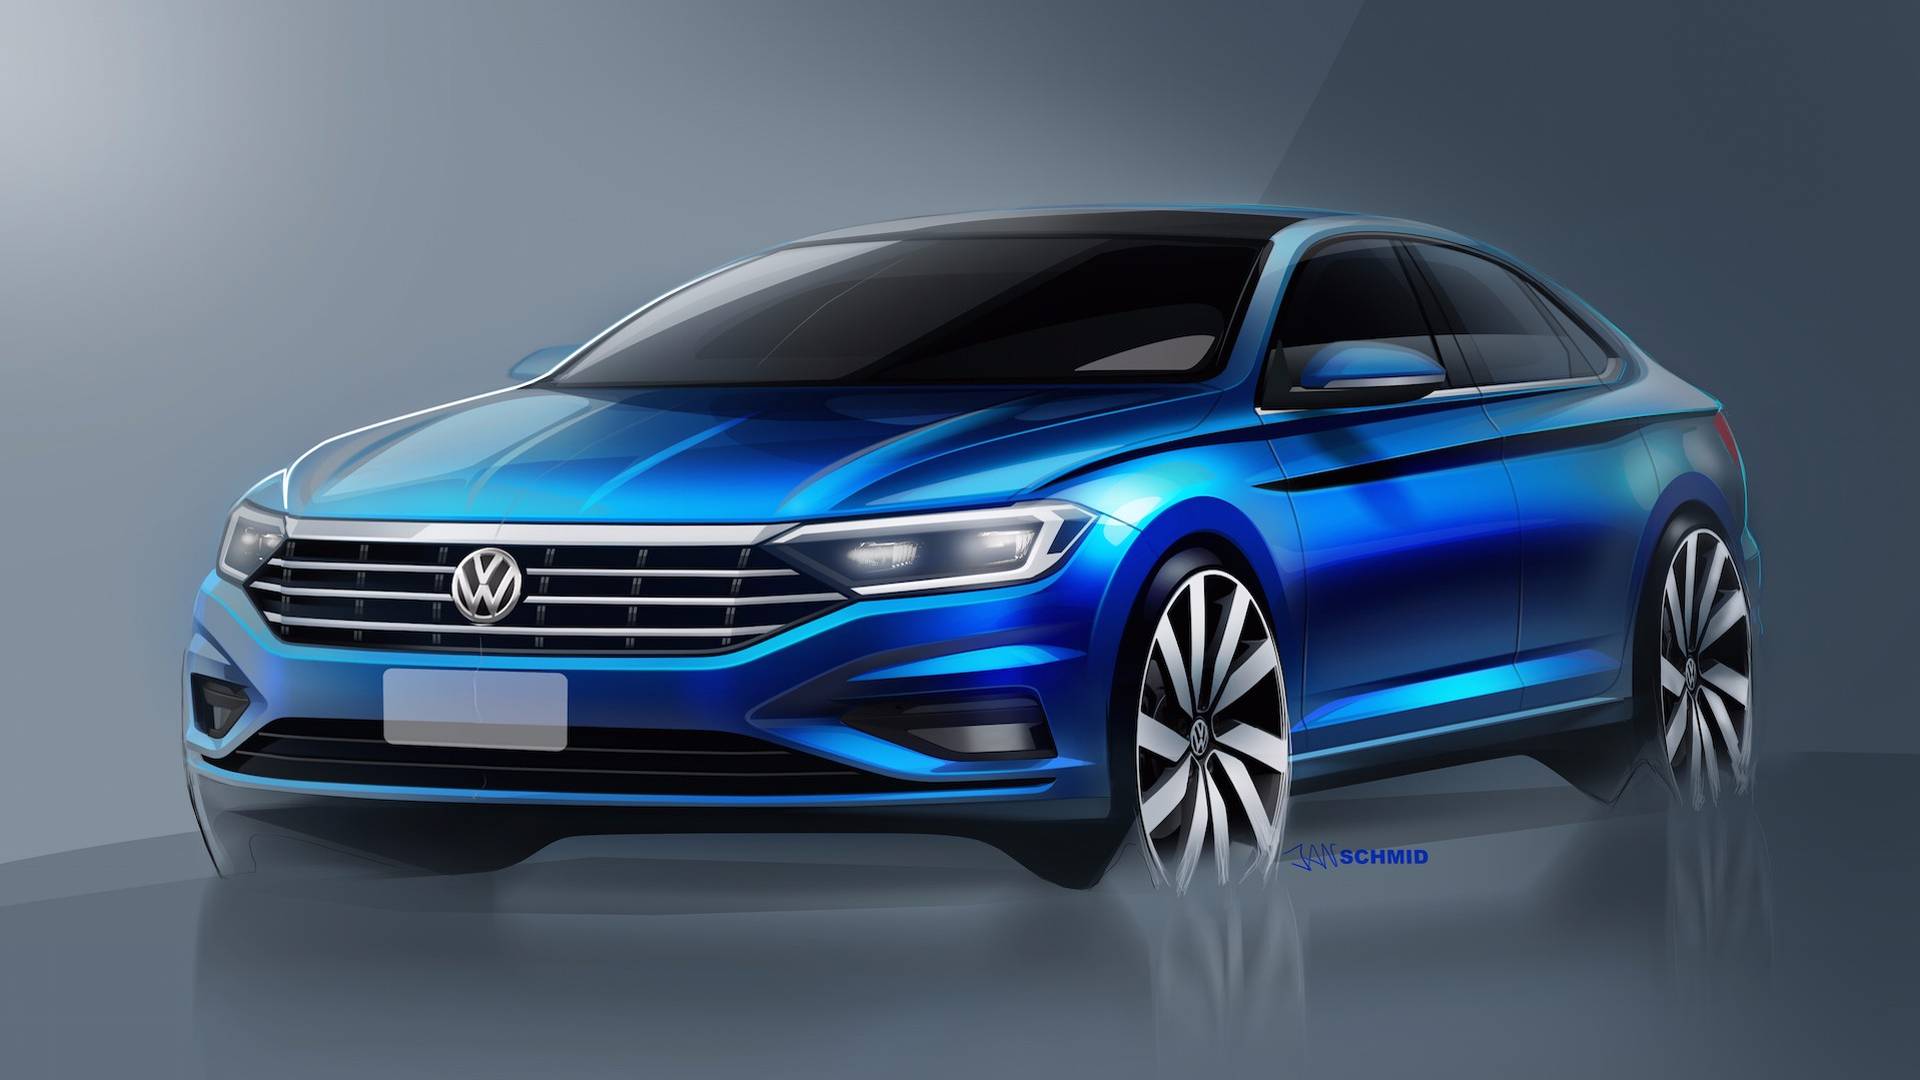 2019 Volkswagen Jetta'ya ait yeni eskiz görseller yayınlandı